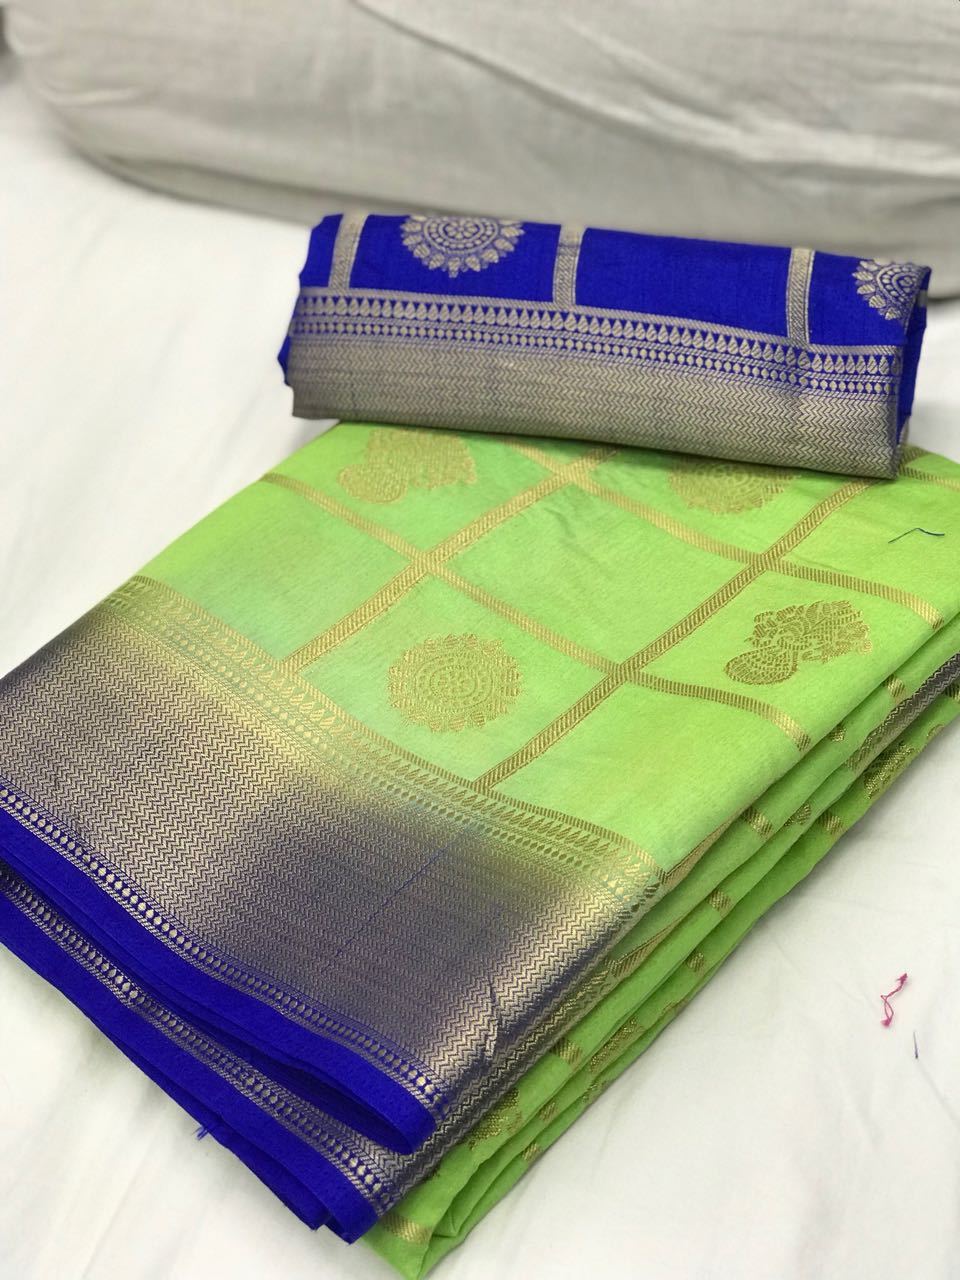 Sea Green with Blue Border Banarasi Silk Saree-SRE-1097 light green coloured lightweight saree